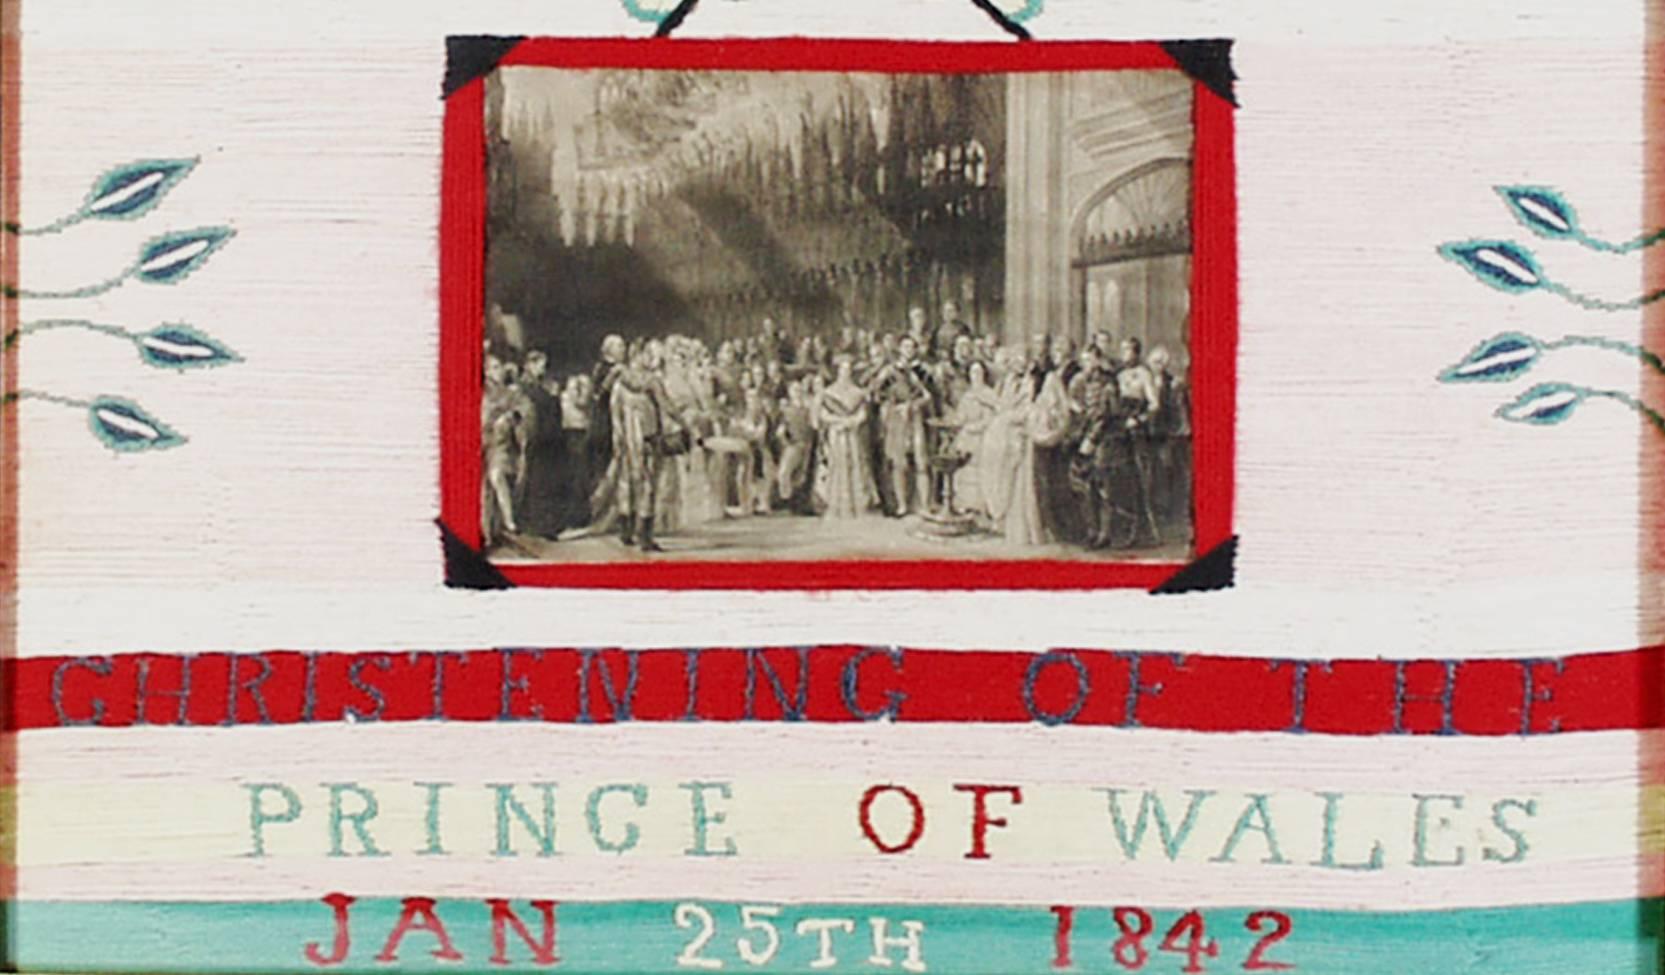 Tableau de lainages royaux anglais,
titré E R/ Baptême du/Prince de Galles/ 25 janvier 1842

Rare tableau en laine à bandes blanches, roses, rouges et vertes, centré par une image en noir et blanc encadrée de laine rouge du baptême du Prince de